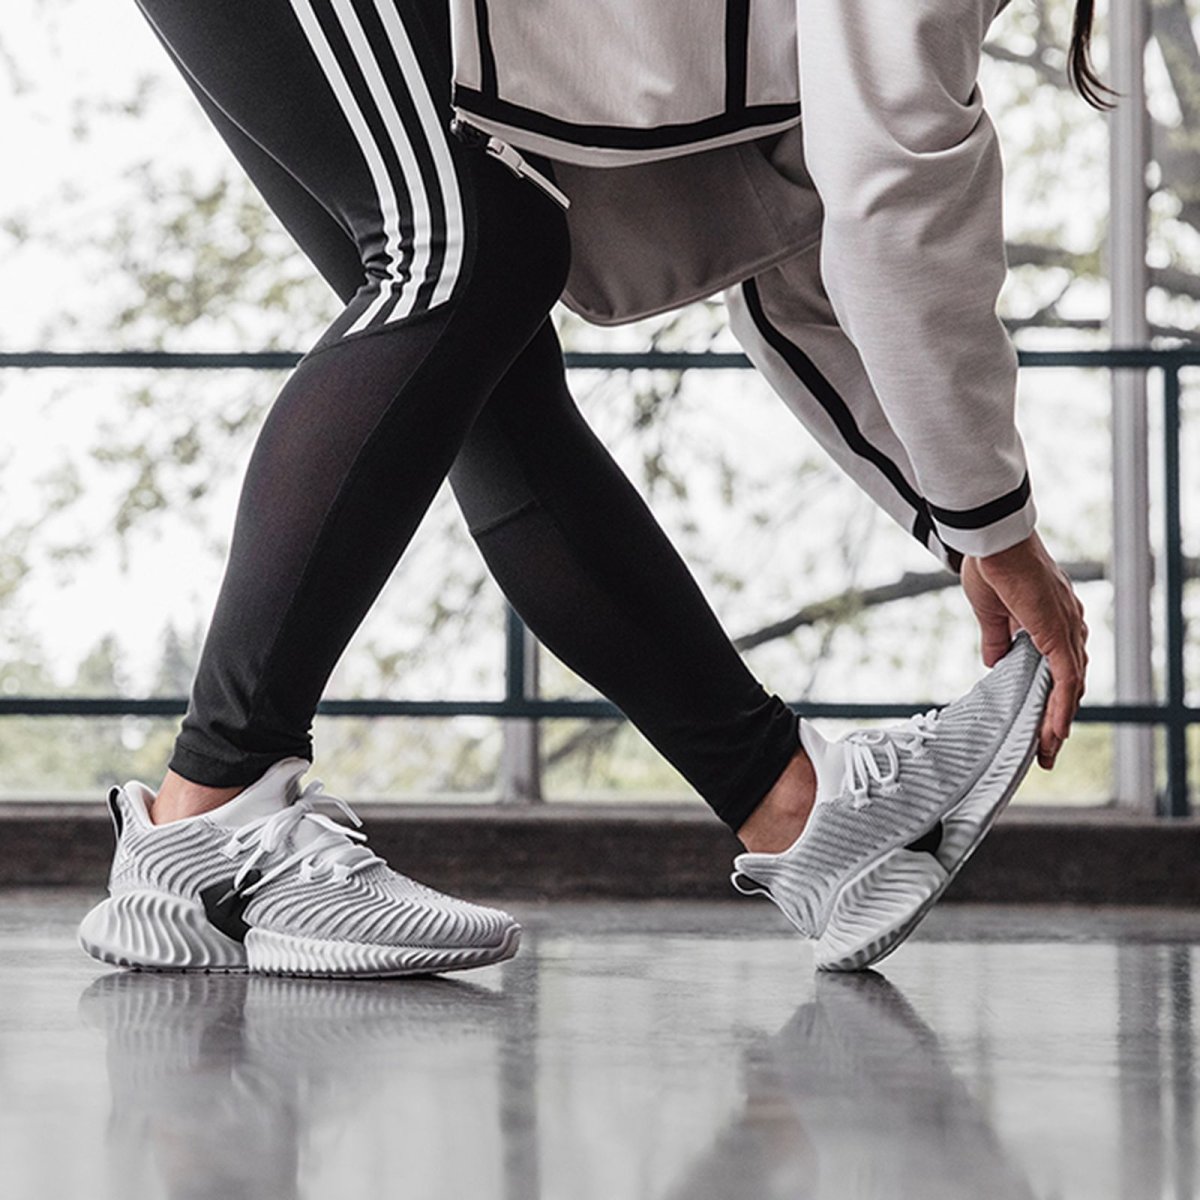 Adidas Alphabounce Instinct на ноге